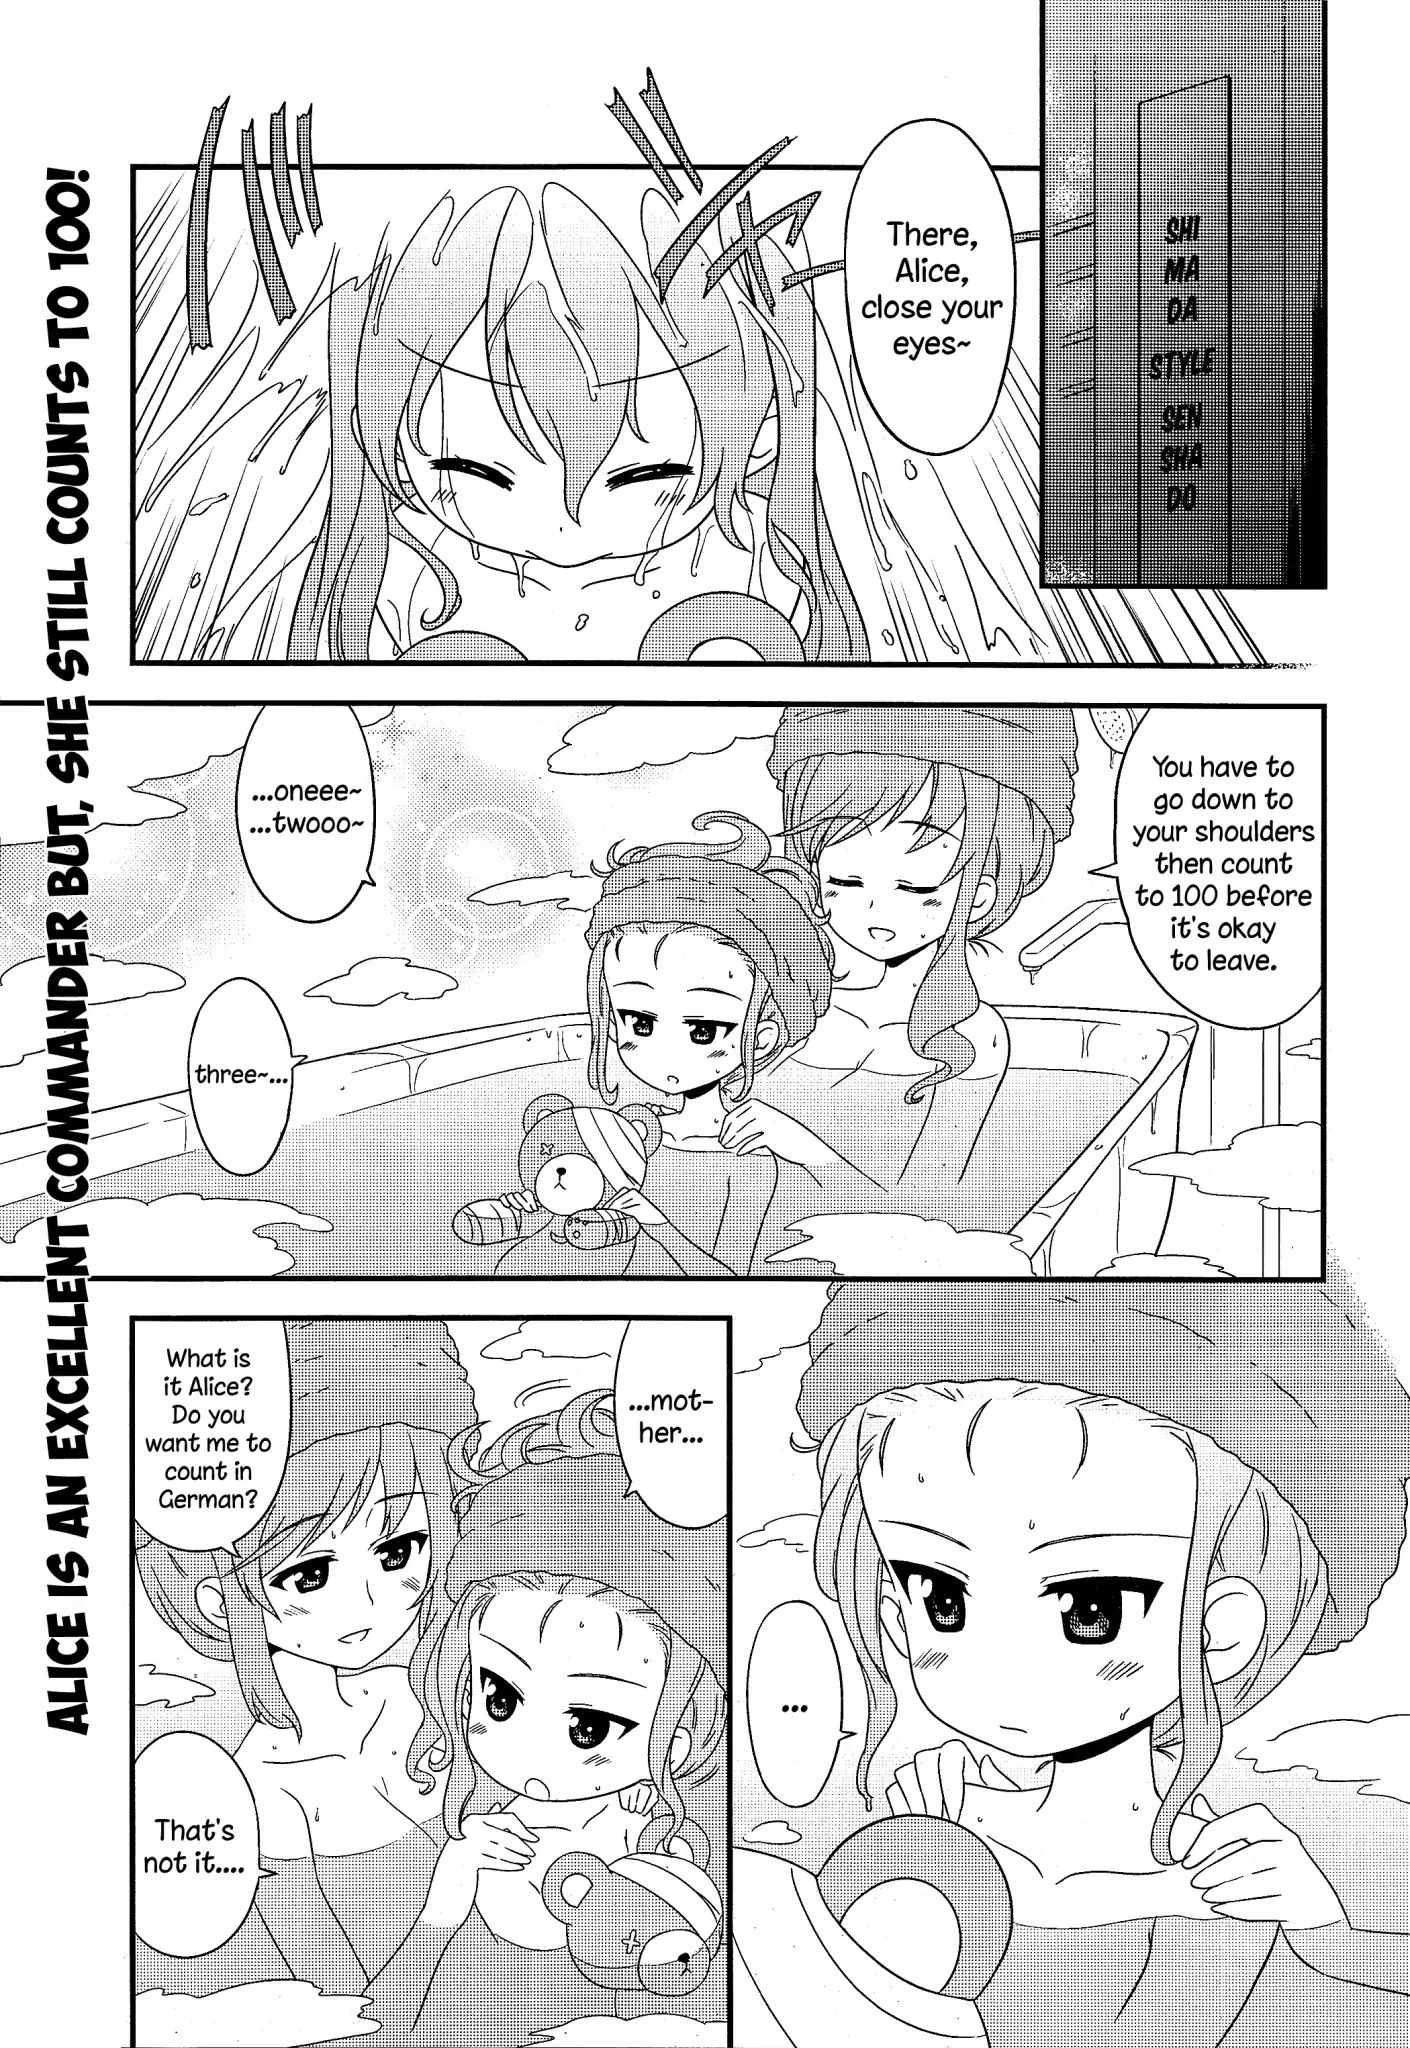 Girls und Panzer: Motto Love Love Sakusen desu! Chapter 36: Ah, the mothers' side? Desu!